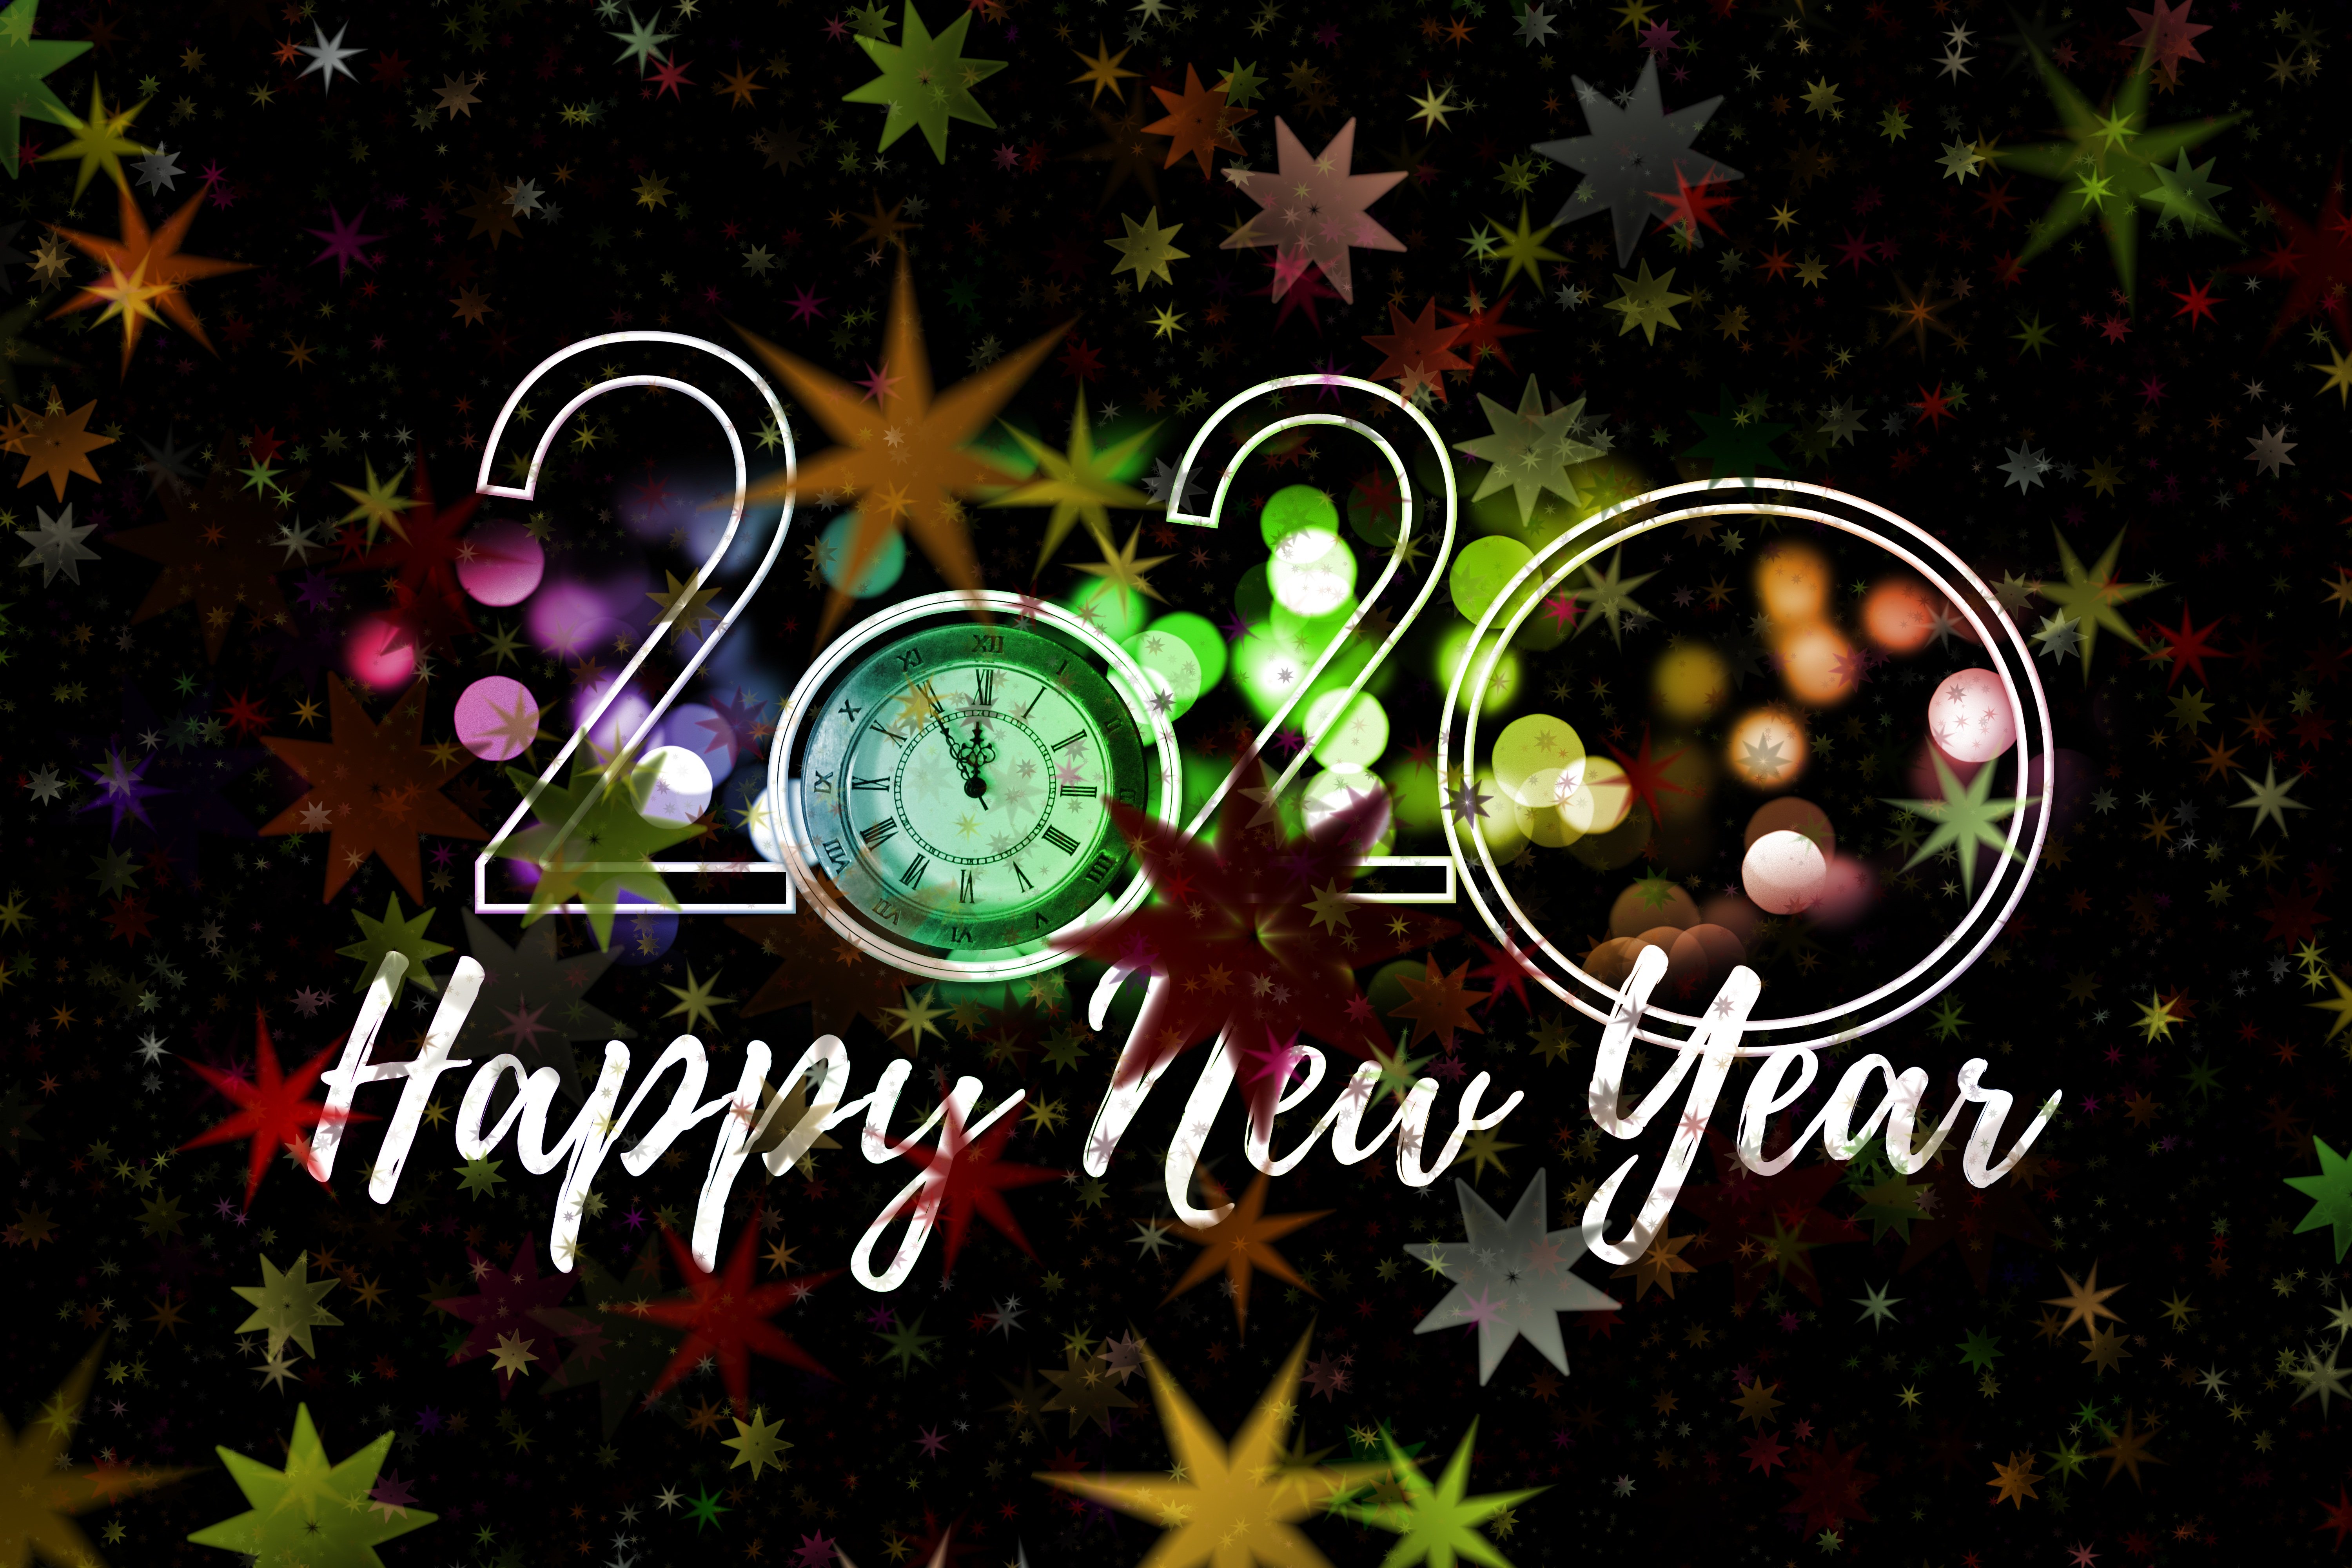 Descarga gratuita de fondo de pantalla para móvil de Año Nuevo, Día Festivo, Feliz Año Nuevo, Año Nuevo 2020.